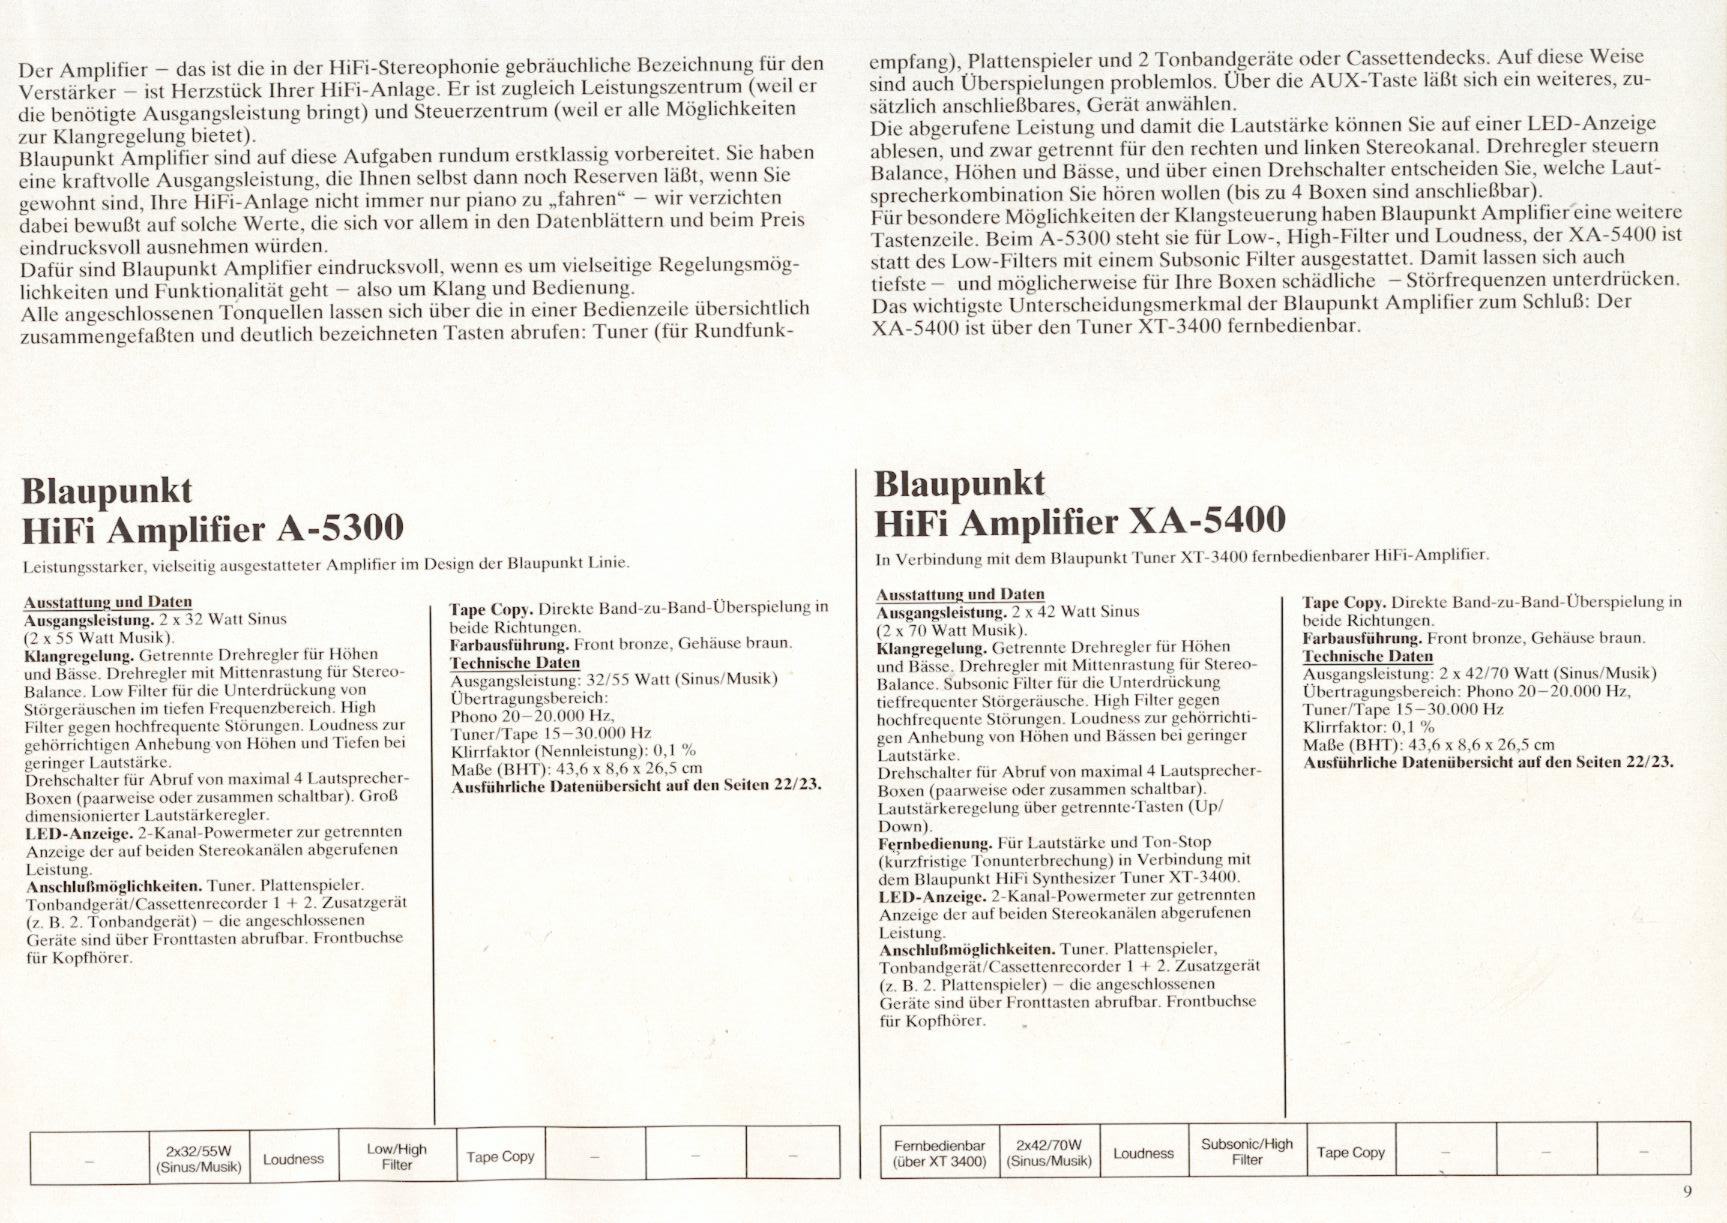 Blaupunkt A-5300-XA-5400-Prospekt-1981-2.jpg